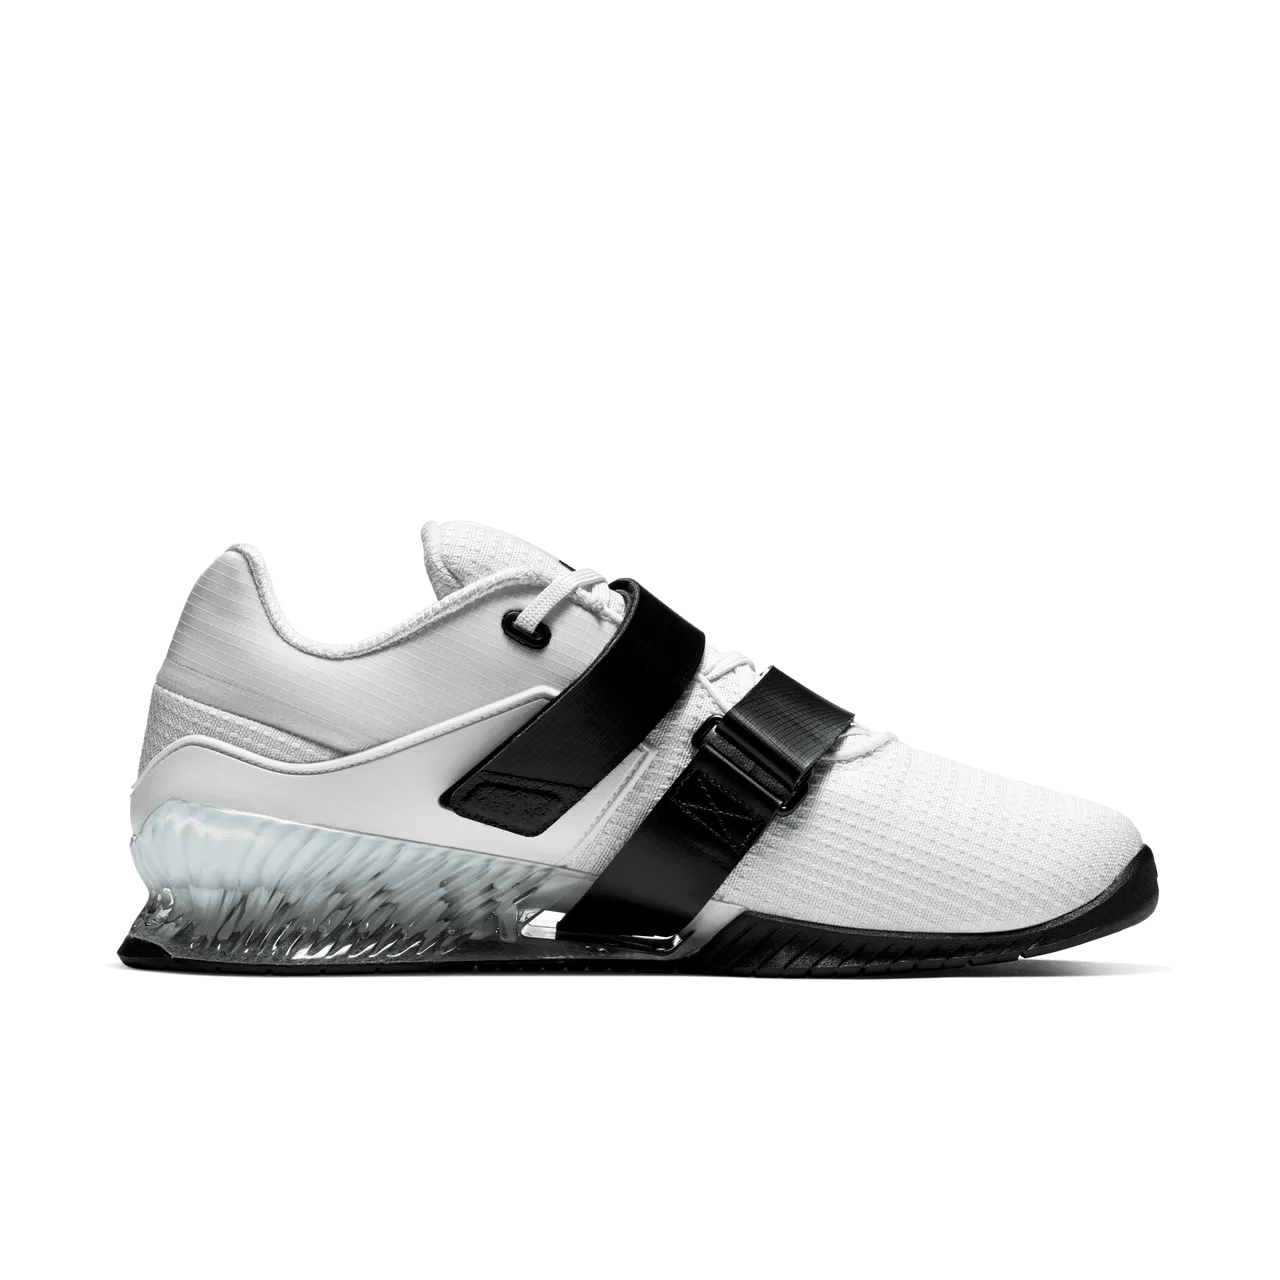 Nike Romaleos 4 Schuhe fürs Gewichtheben - Weiß